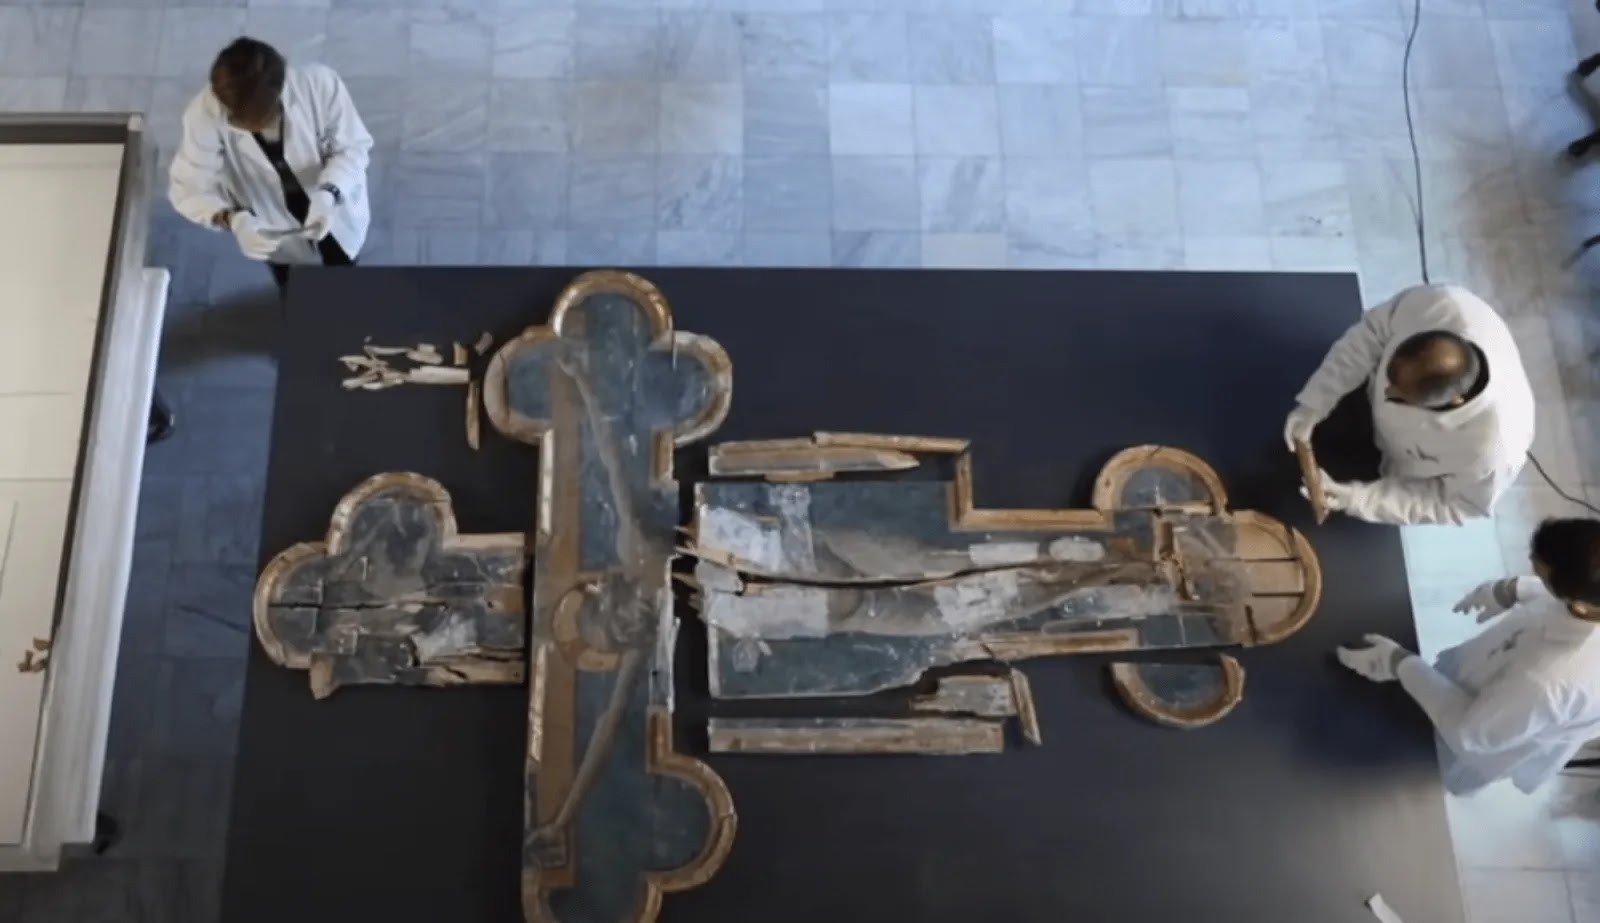 Ιταλία: Αποκαταστάθηκε ο «σταυρός του πελεκάνου» που κατέστρεψε ο σεισμός - Εκτίθεται στο Βατικανό